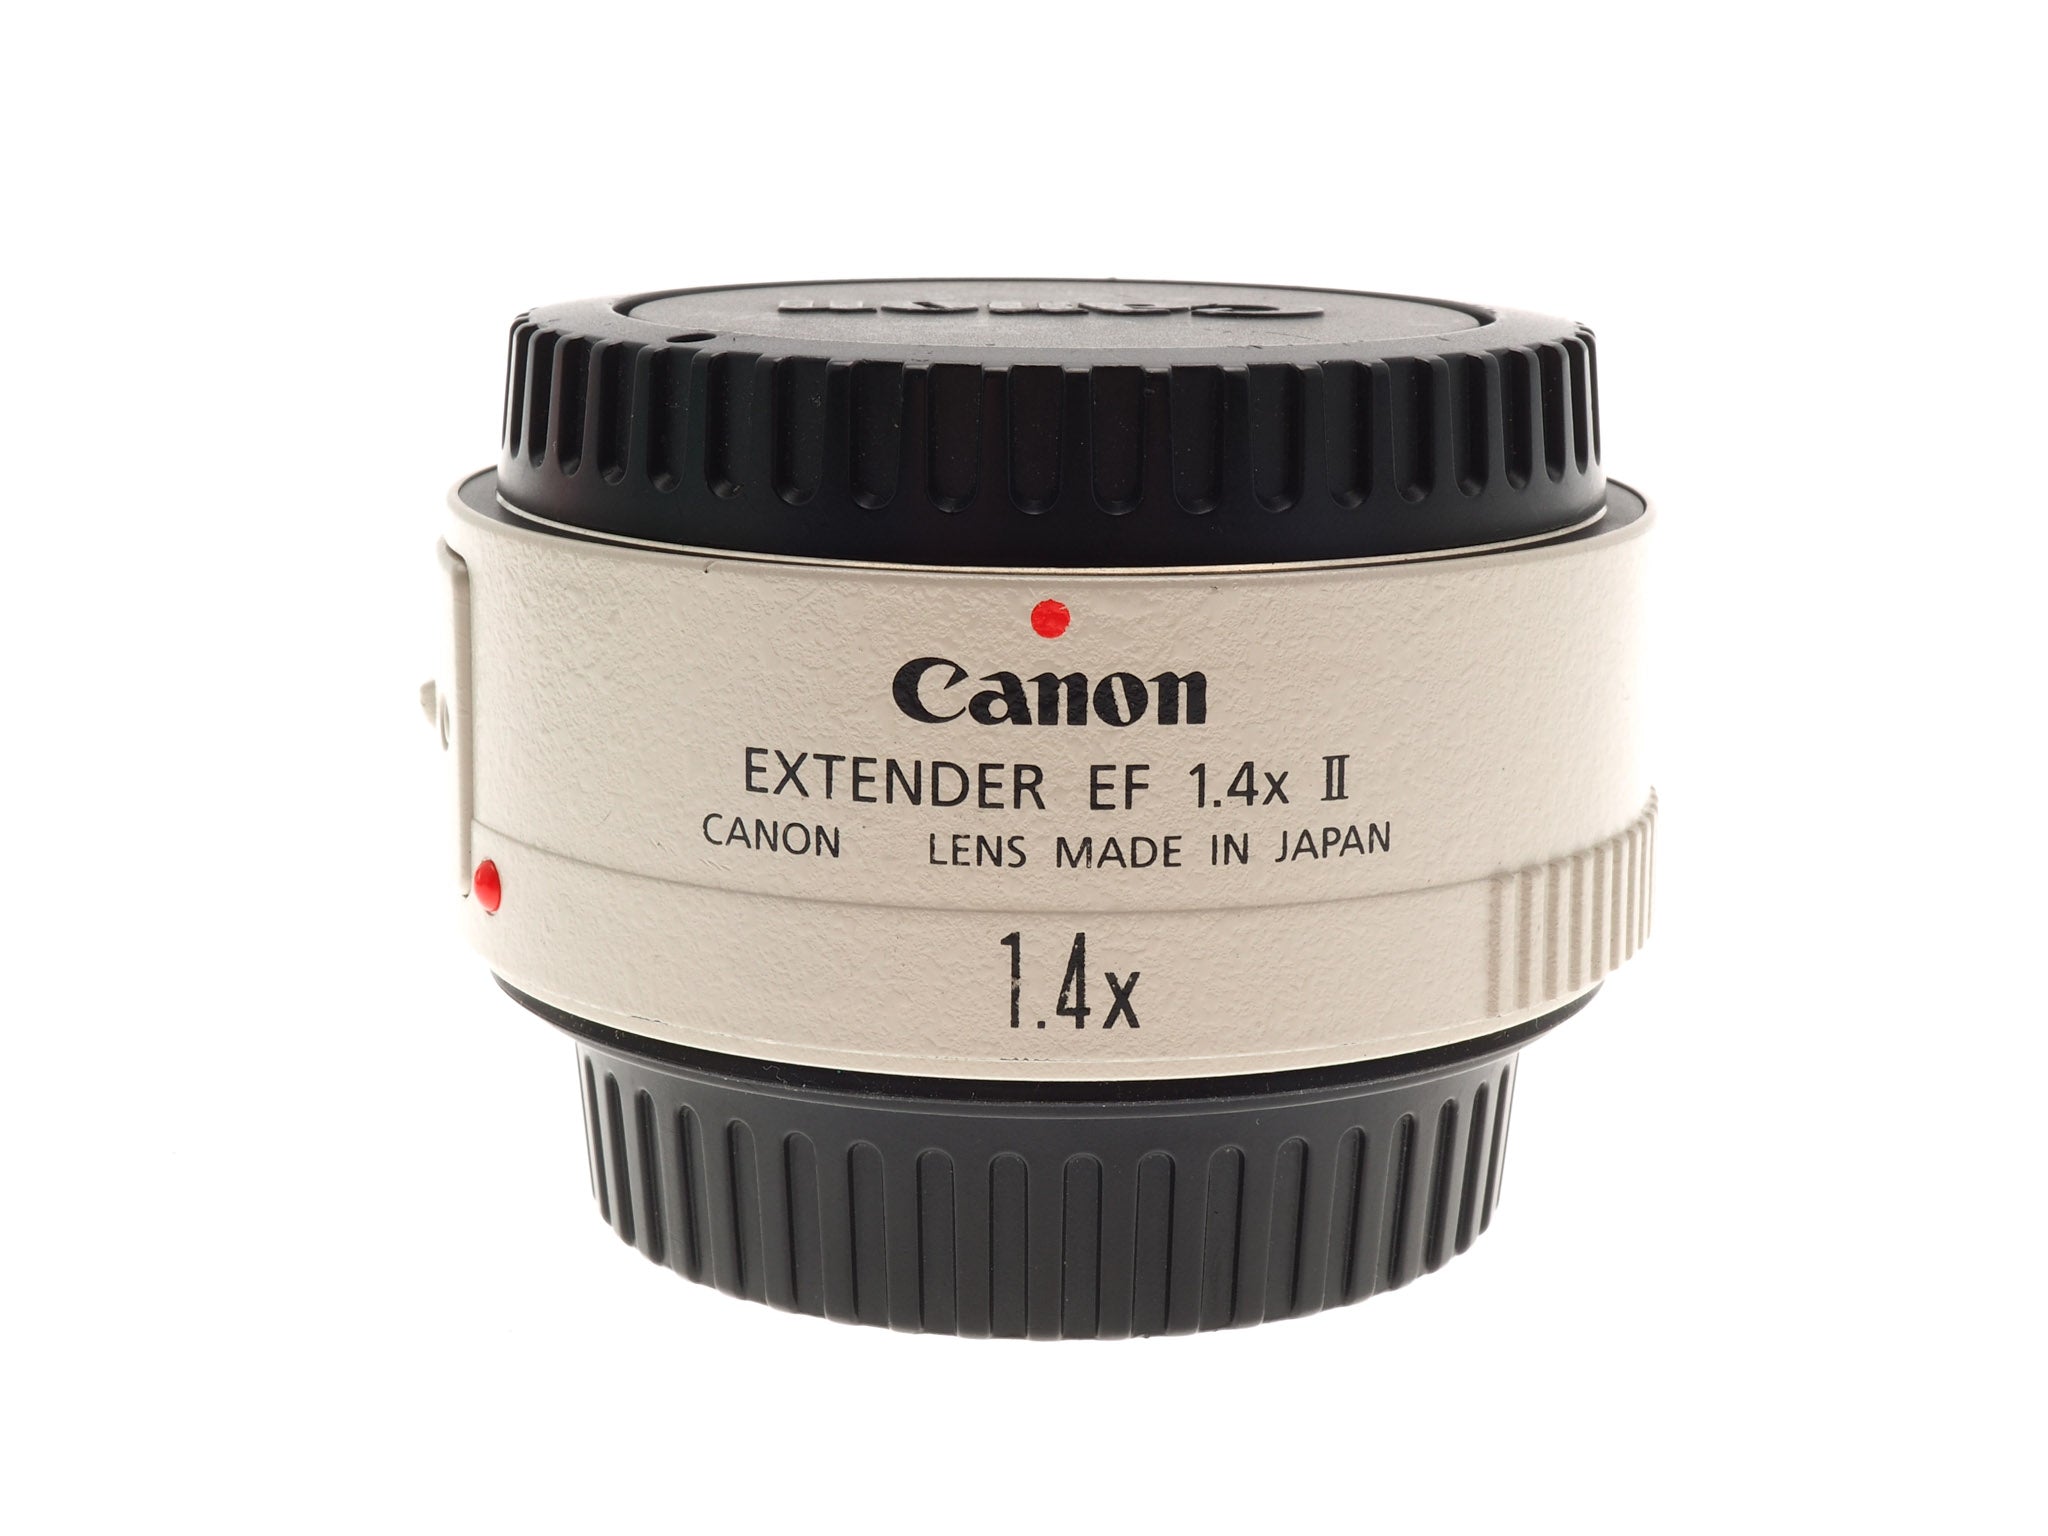 Intentie Creatie woonadres Canon 1.4x EF Extender II – Kamerastore